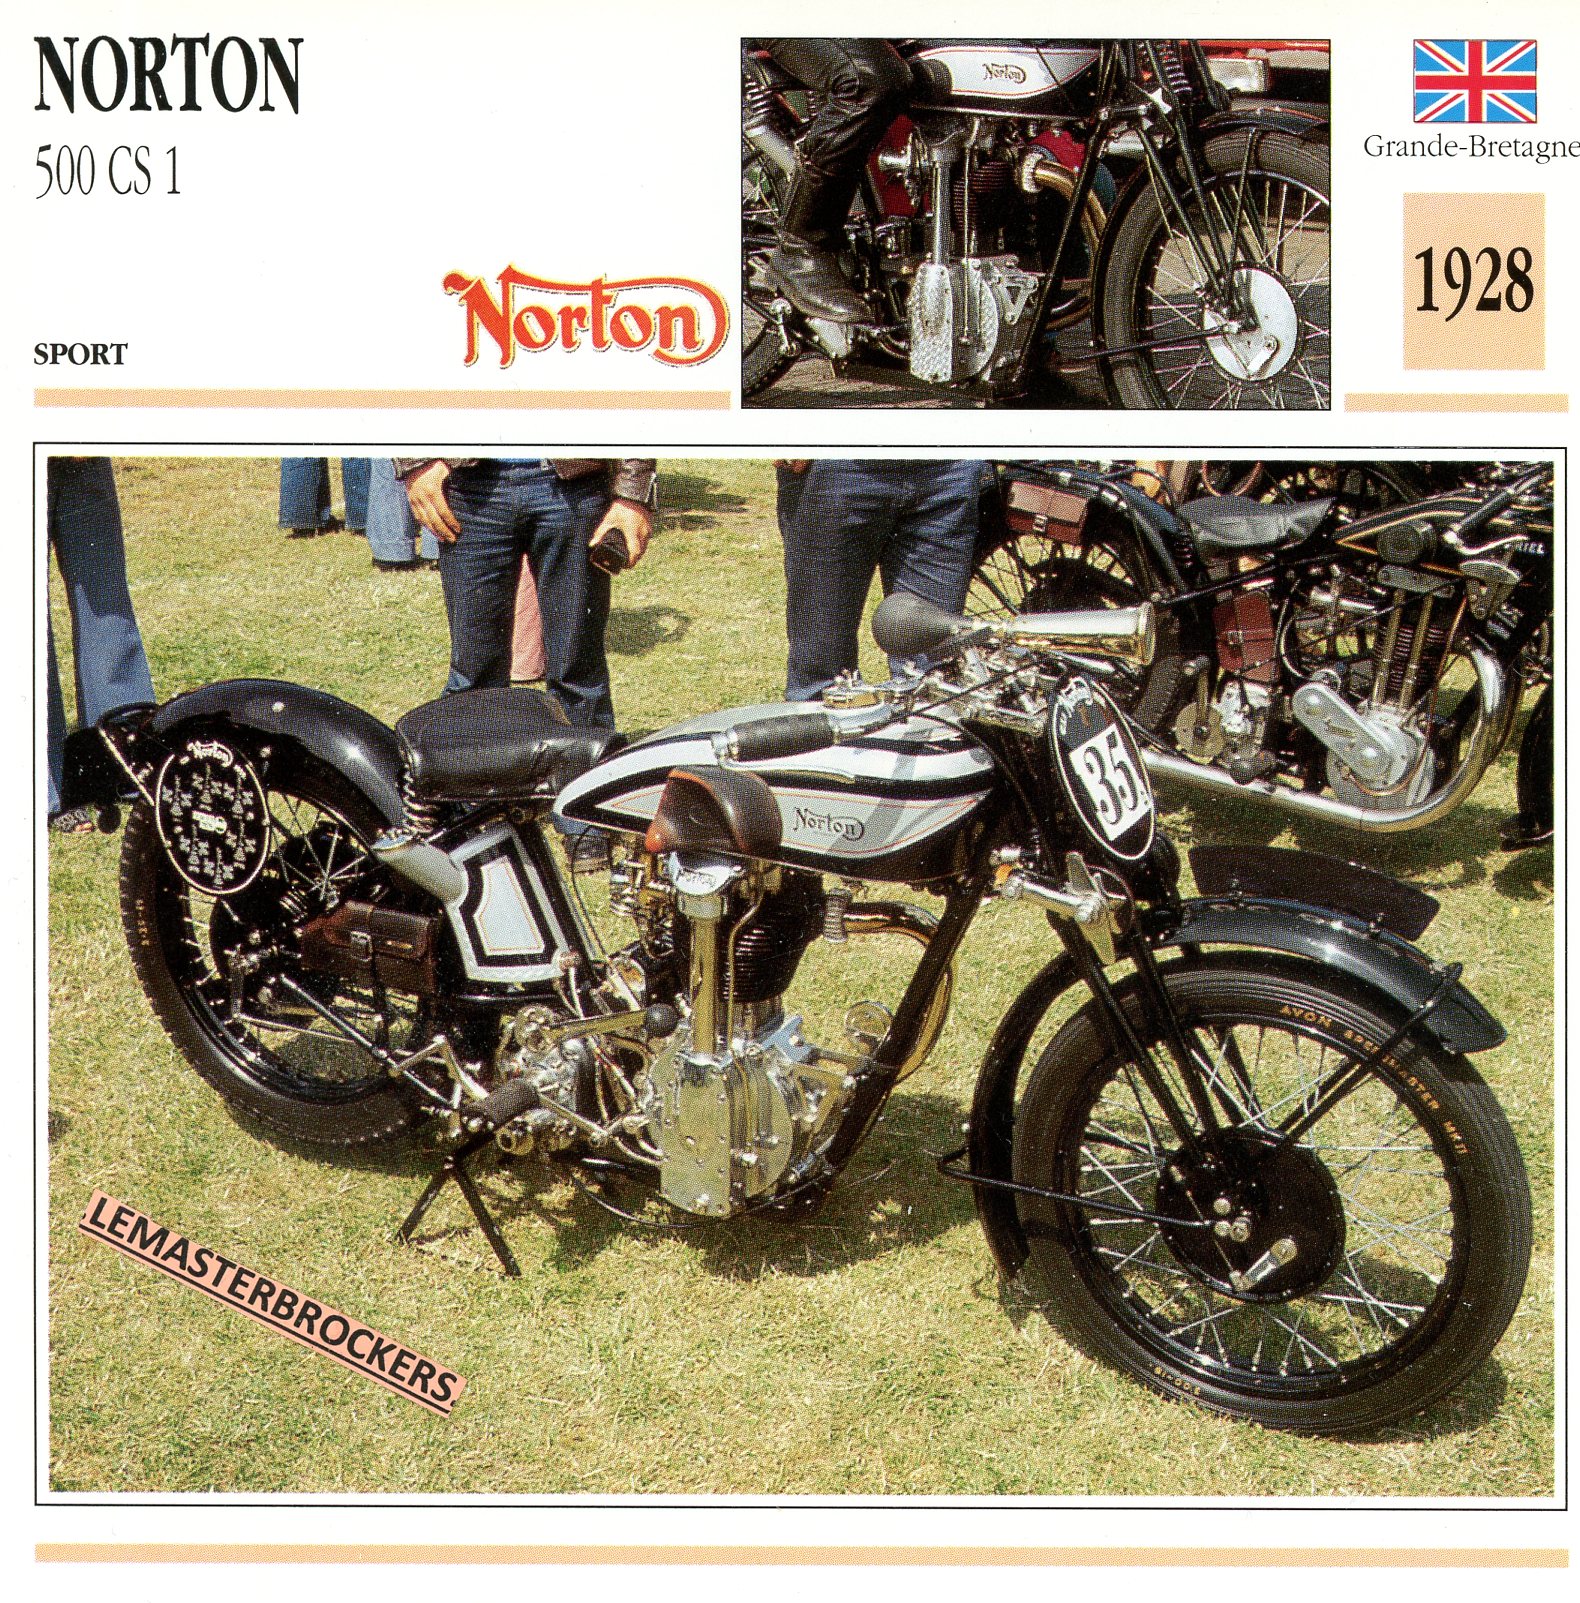 NORTON-500-CS1-1928-FICHE-MOTO-ATLAS-lemasterbrockers-CARD-MOTORCYCLE